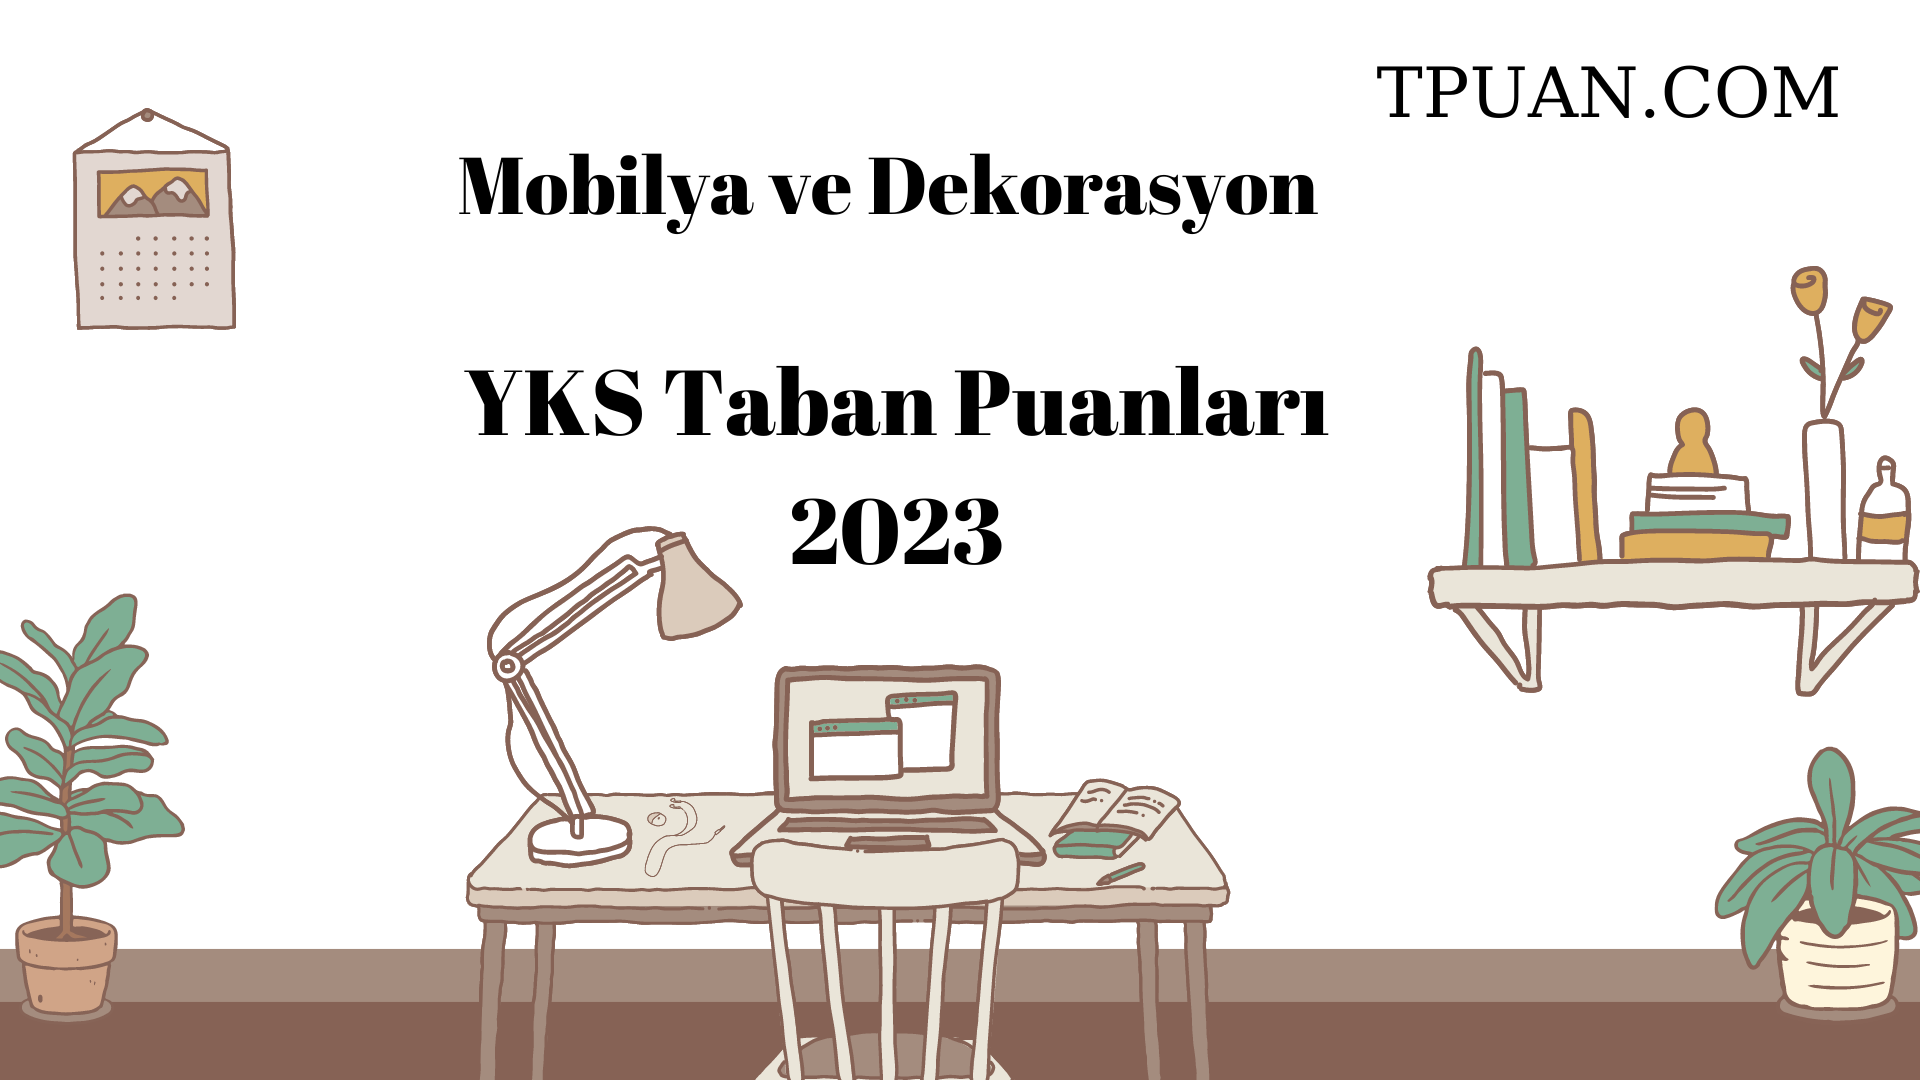  Mobilya ve Dekorasyon YKS Taban Puanları 2023